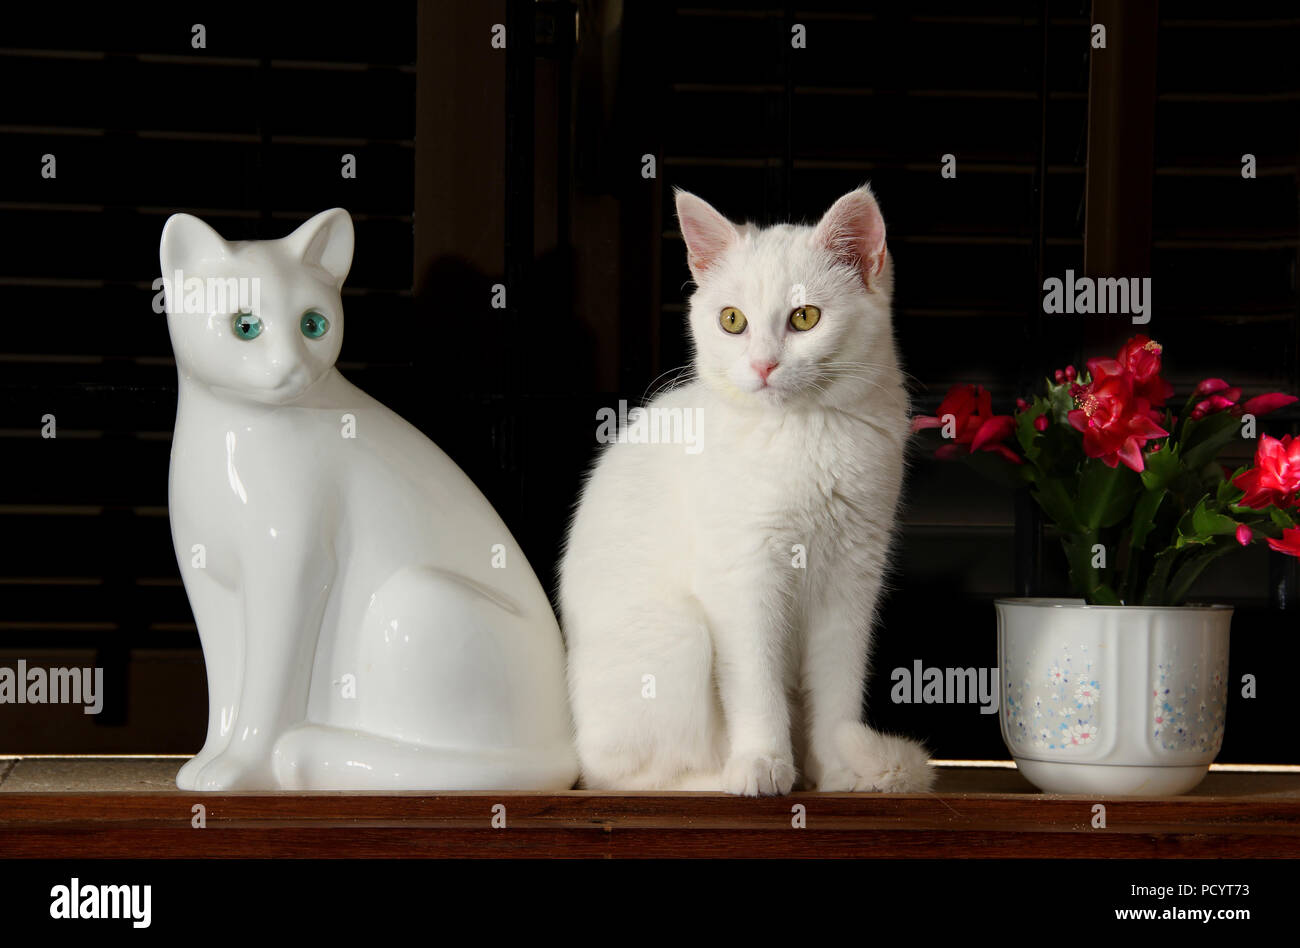 Gattino bianco, 3 mese vecchio seduto vicino a un bianco figurina di un gatto Foto Stock